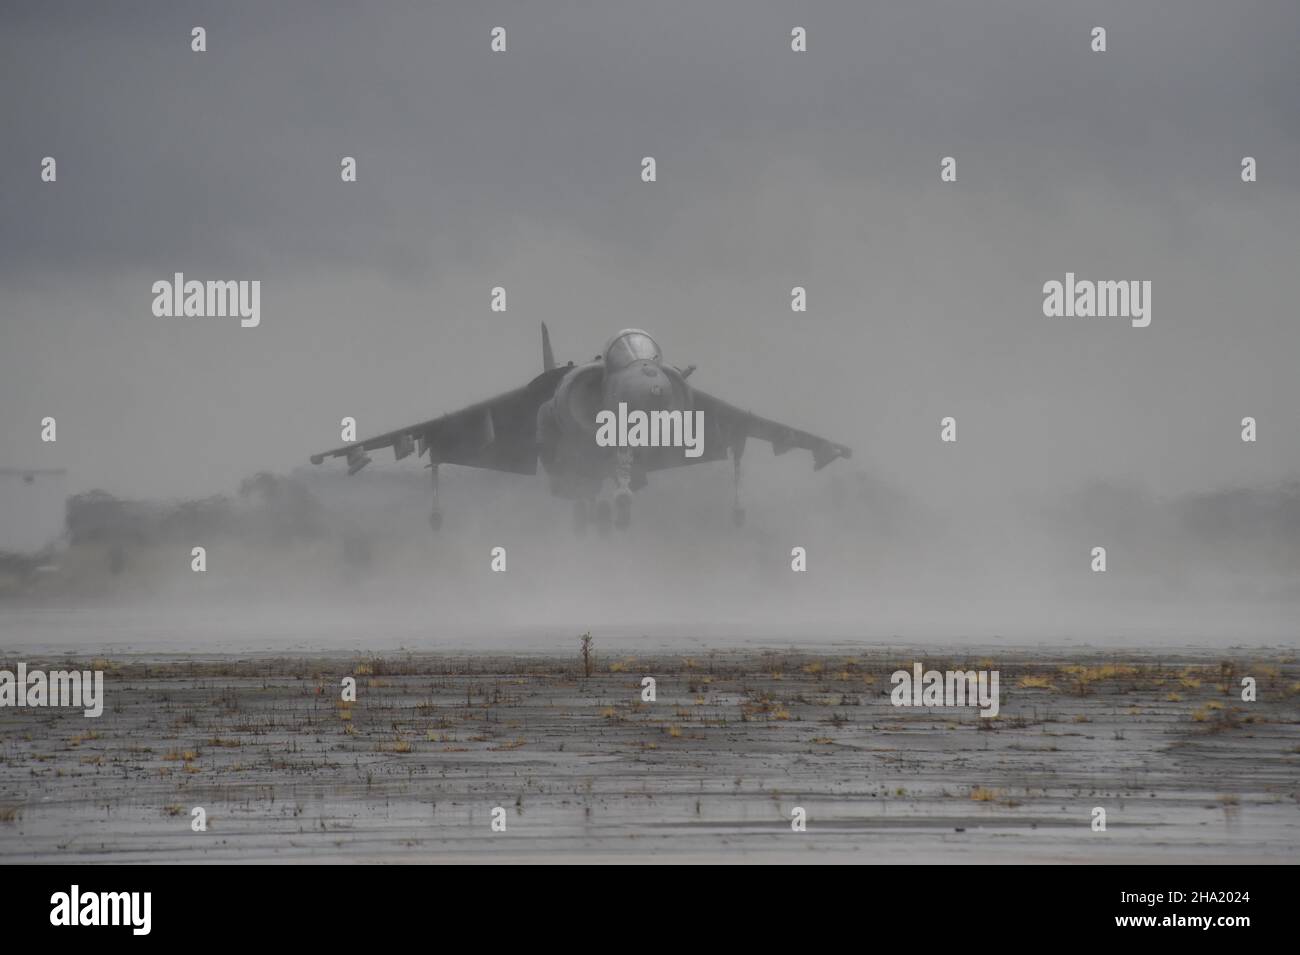 United States Marine Corps AV-8B Harrier II atterraggio nella nebbia (3 del 4) a MCAS Miramar, California. Foto Stock